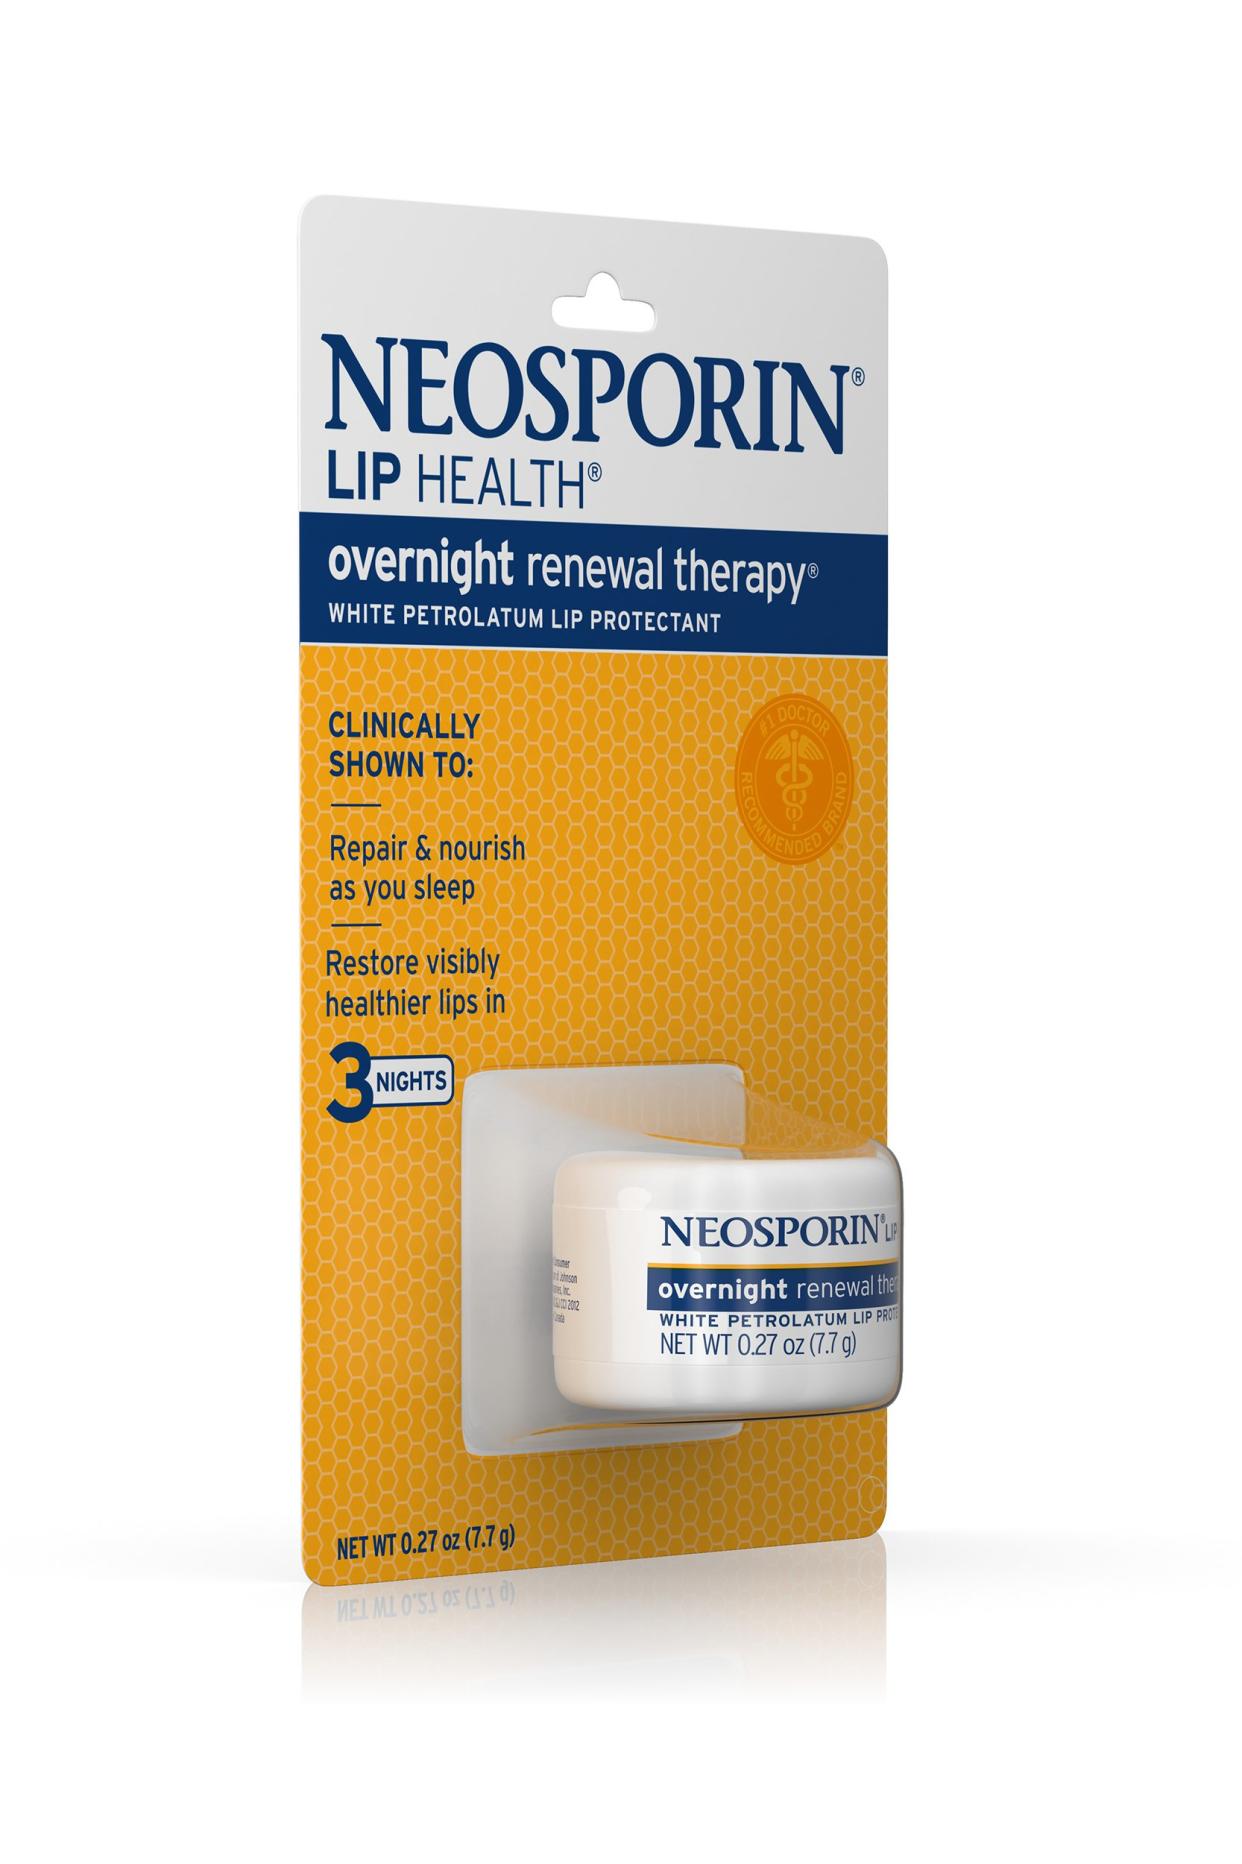 Neosporin Lip Health Renewal Therapy